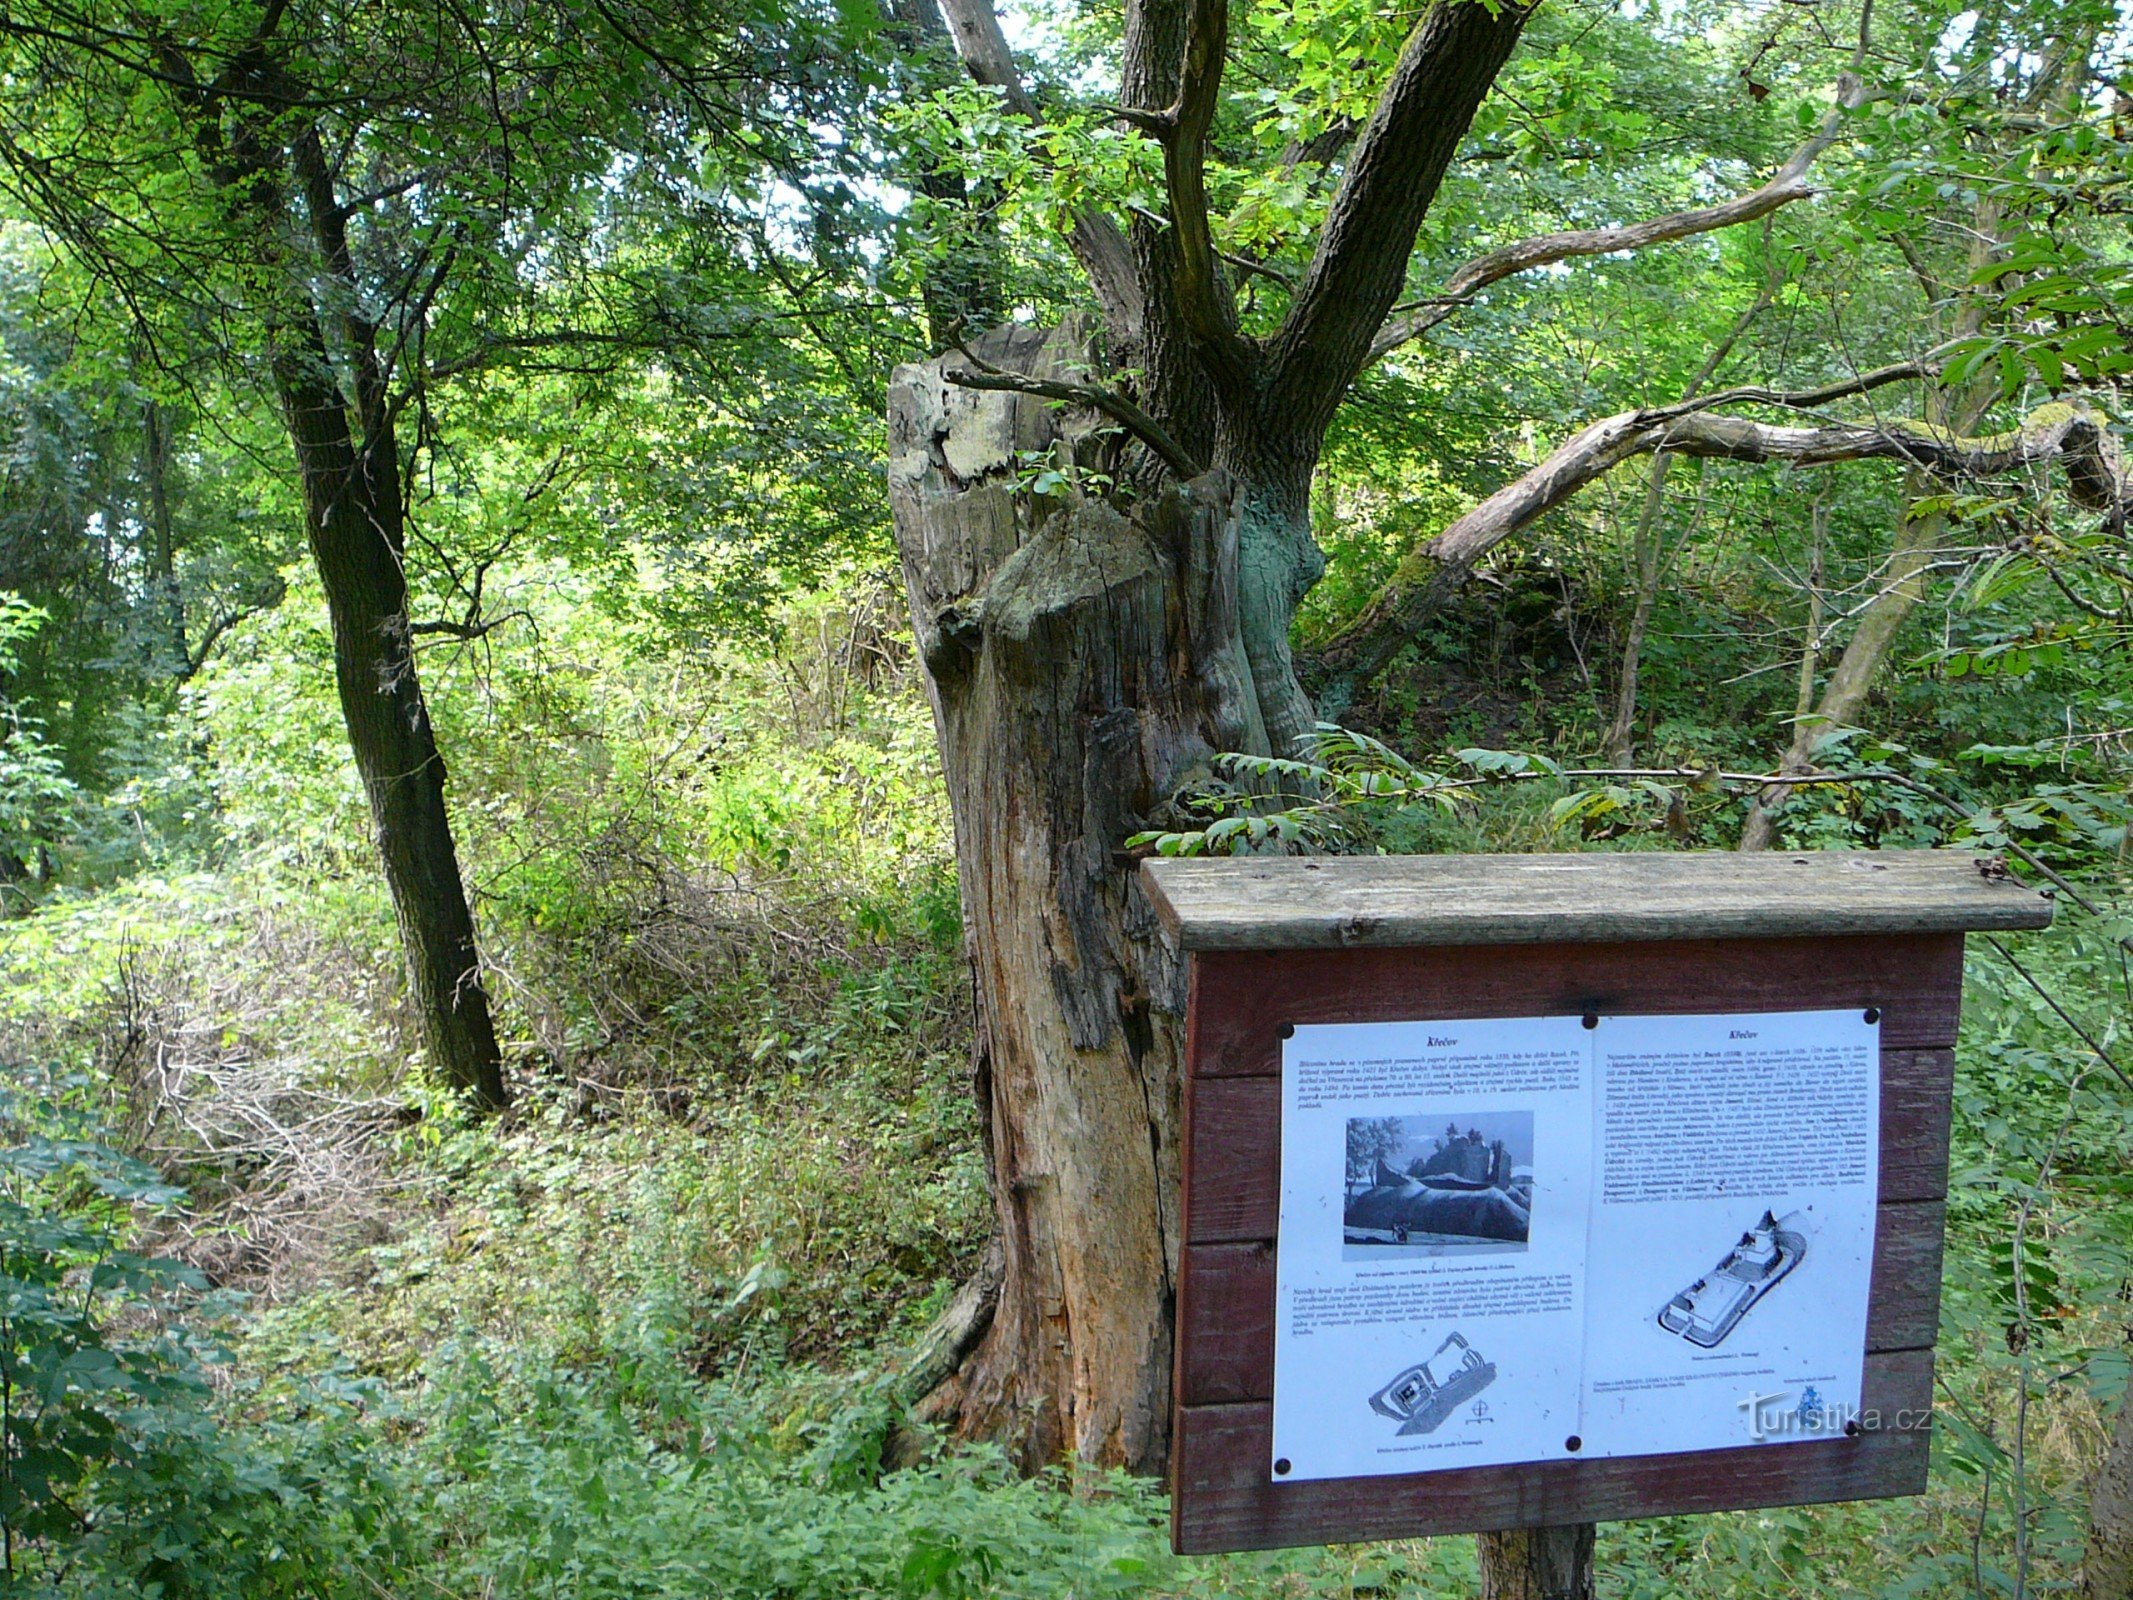 Thân cây sồi trong hào lâu đài với bảng thông tin